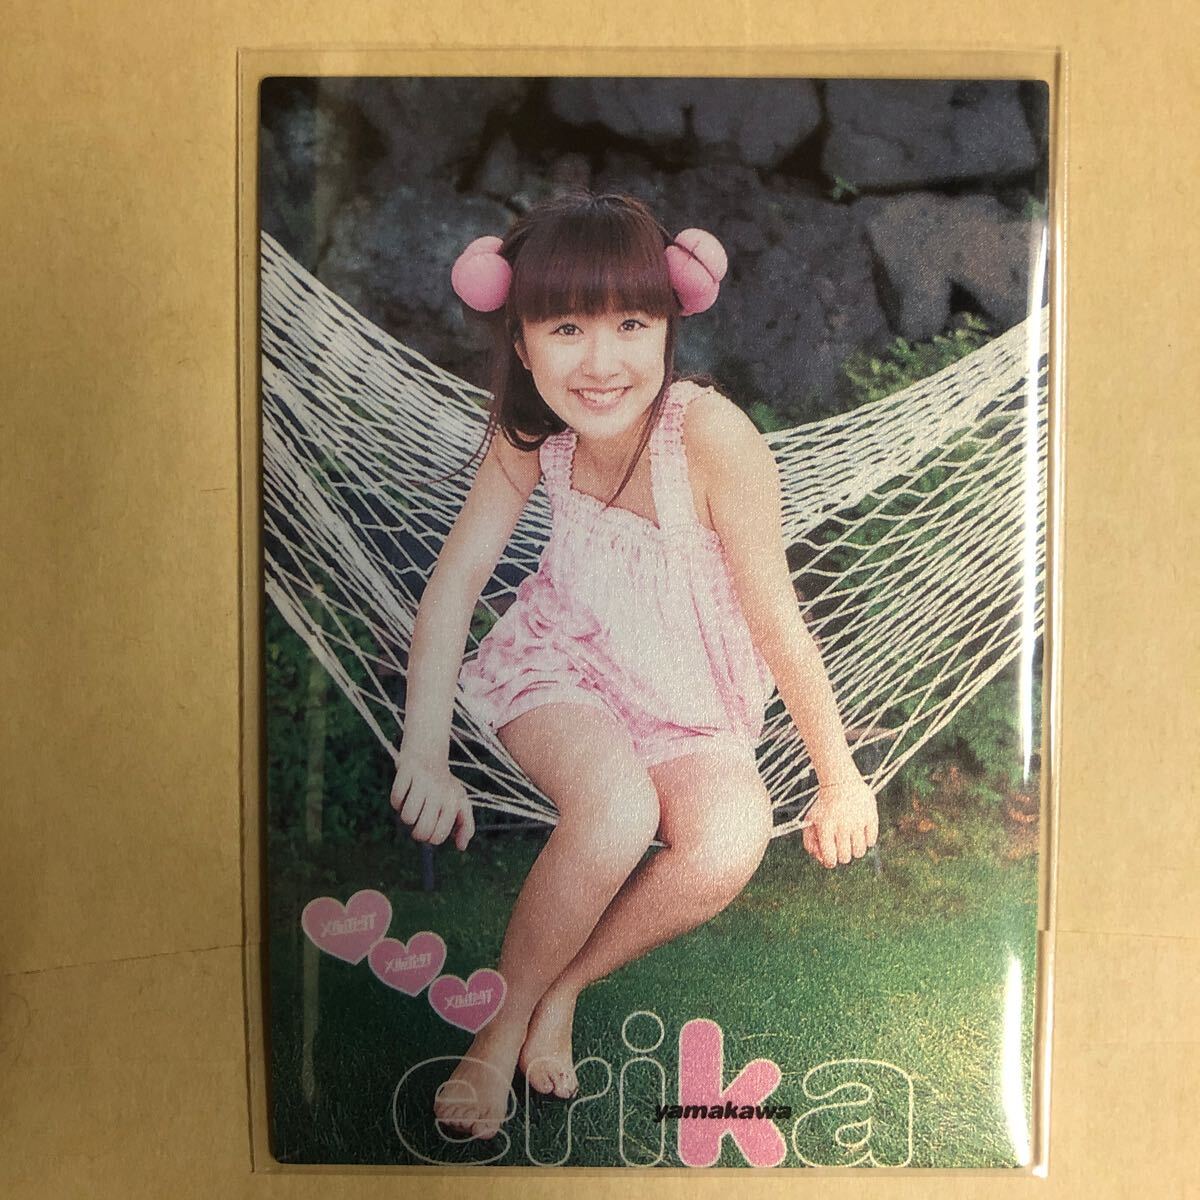 山川恵里佳 2000 トレカ アイドル グラビア カード 035 タレント トレーディングカード_画像1